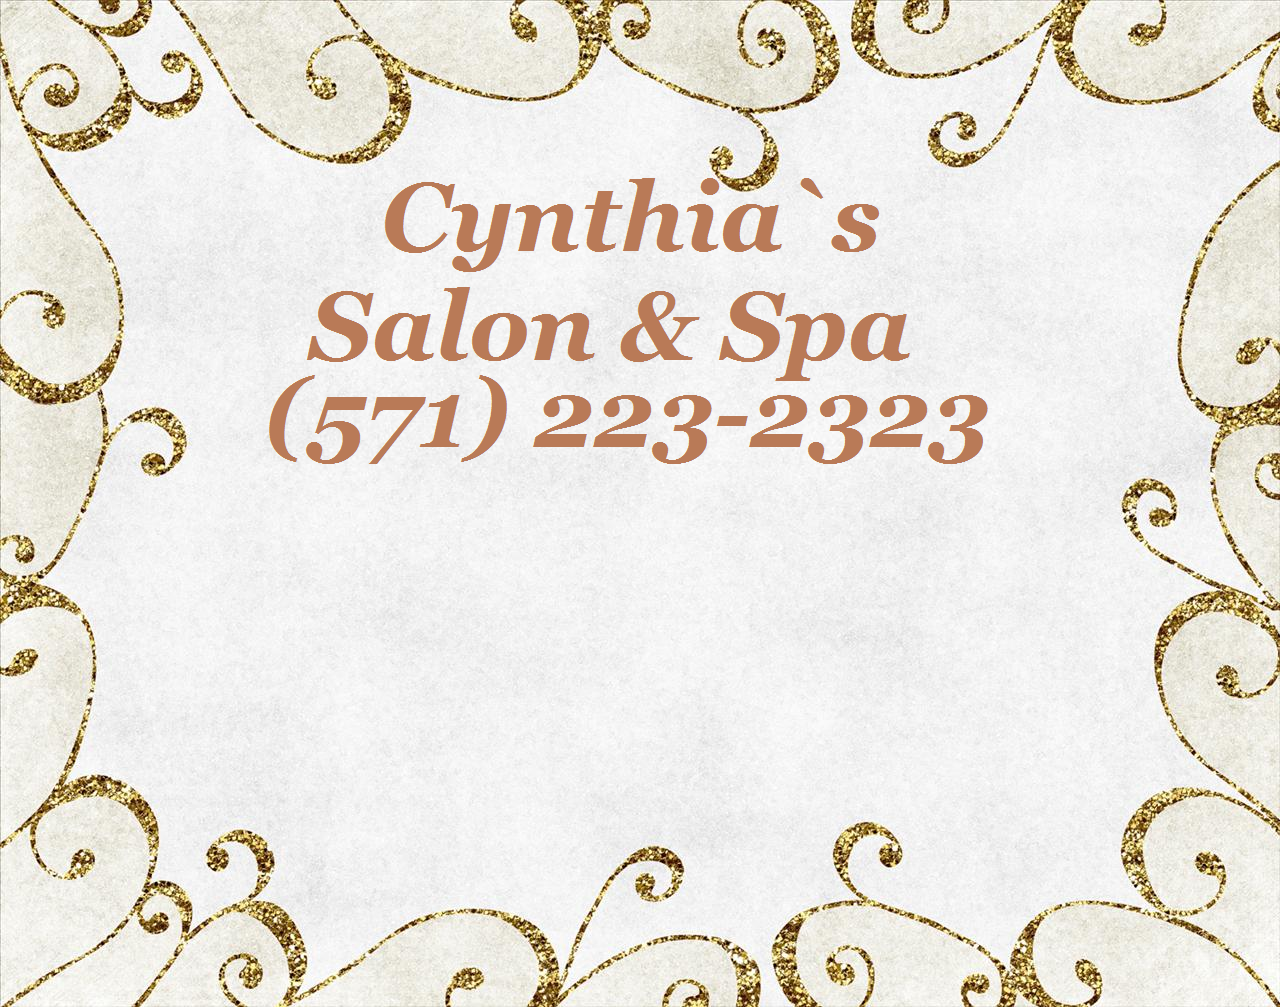 Cynthia's Salon & Spa